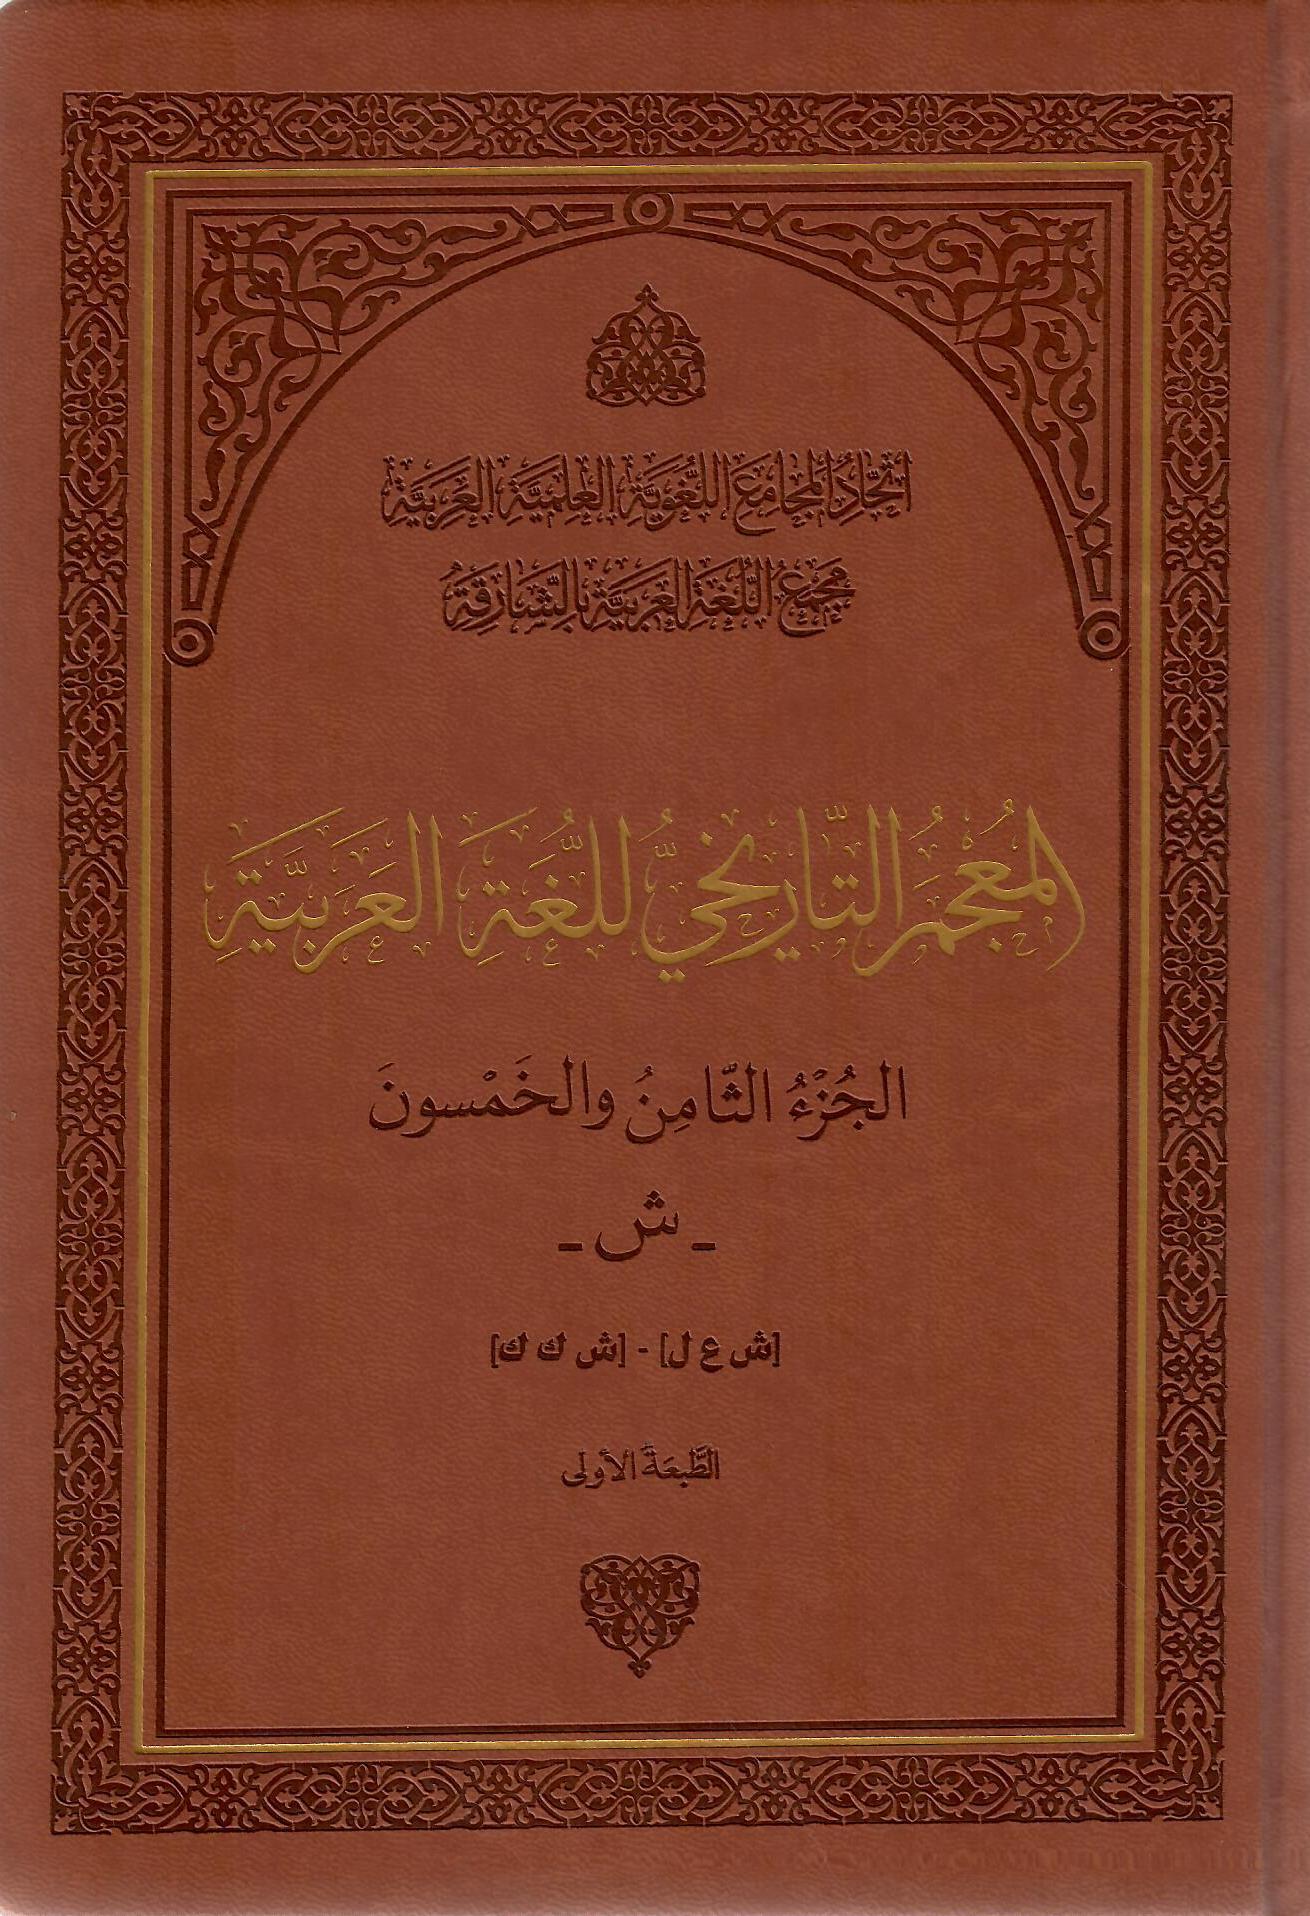 المعجم التاريخي للغة العربية الجزء الثامن والخمسون